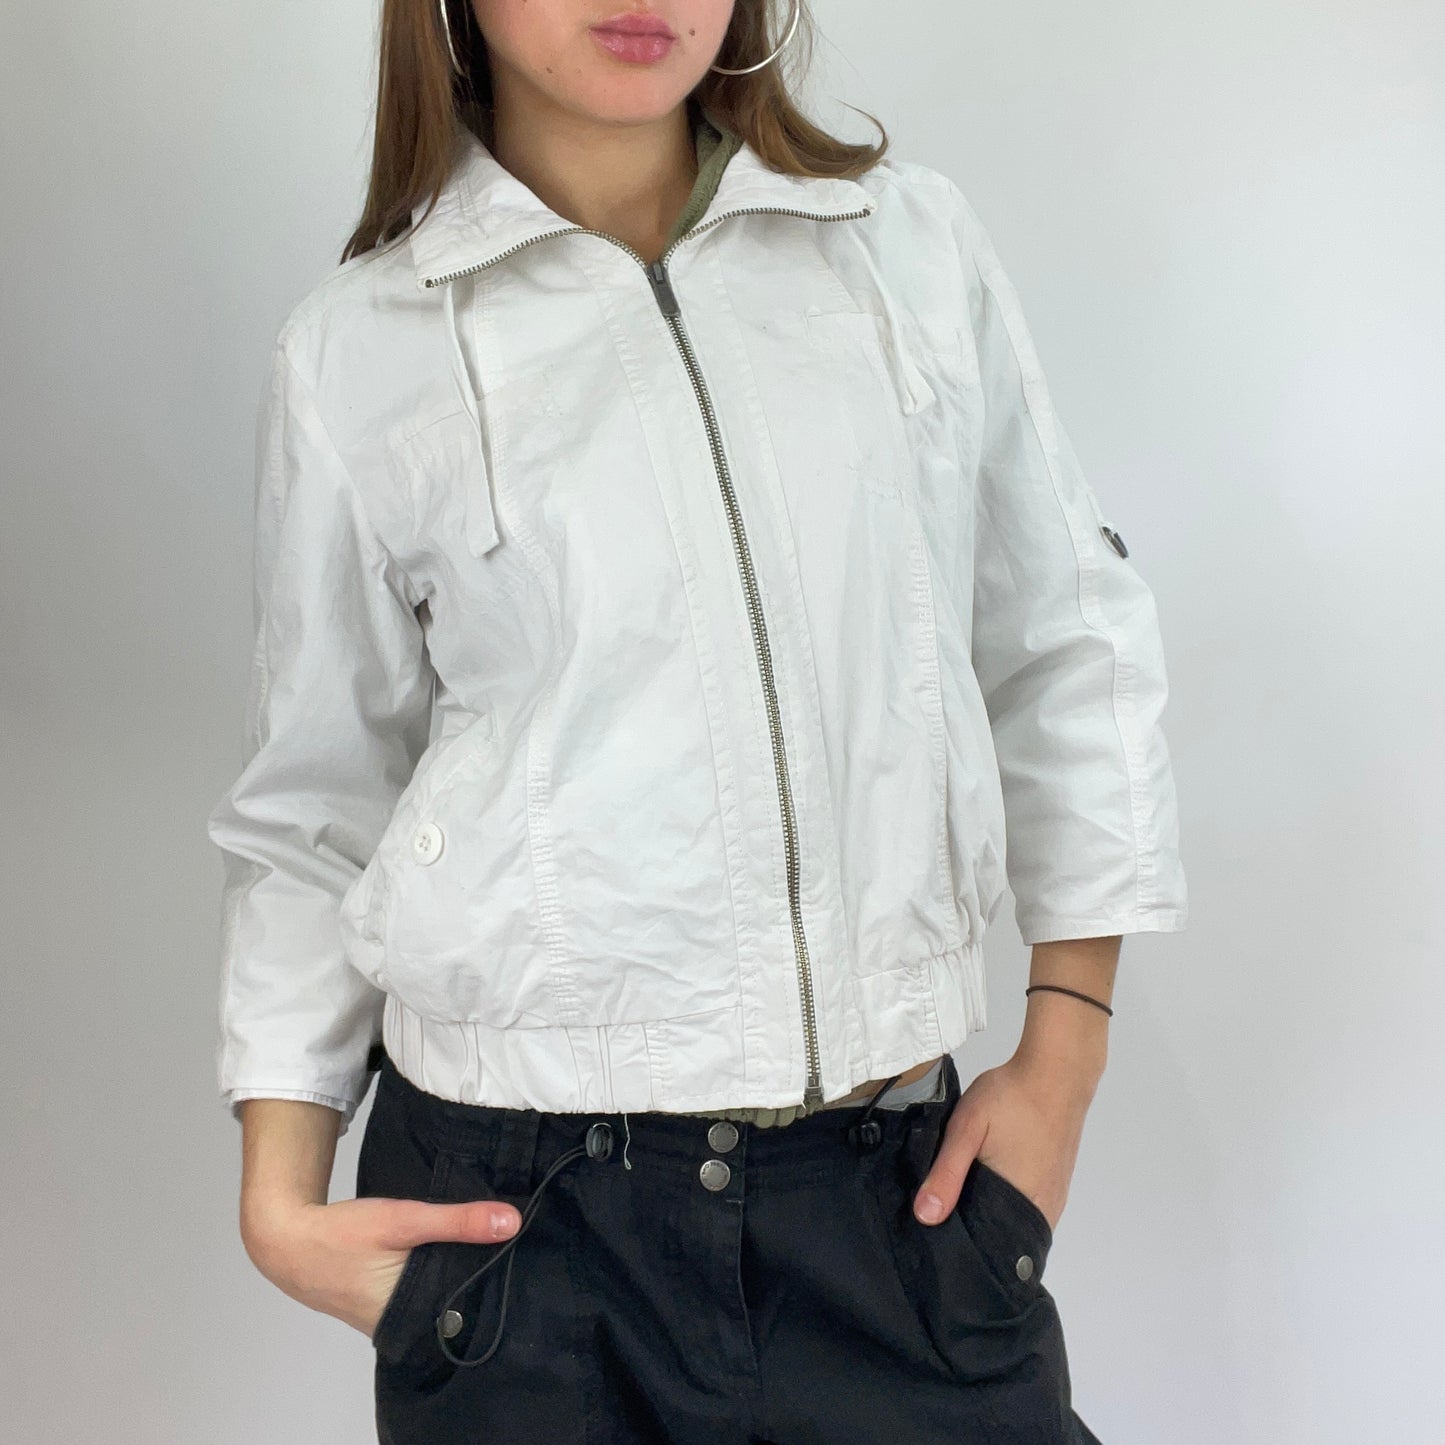 BLOKECORE DROP | xs white zip up jacket